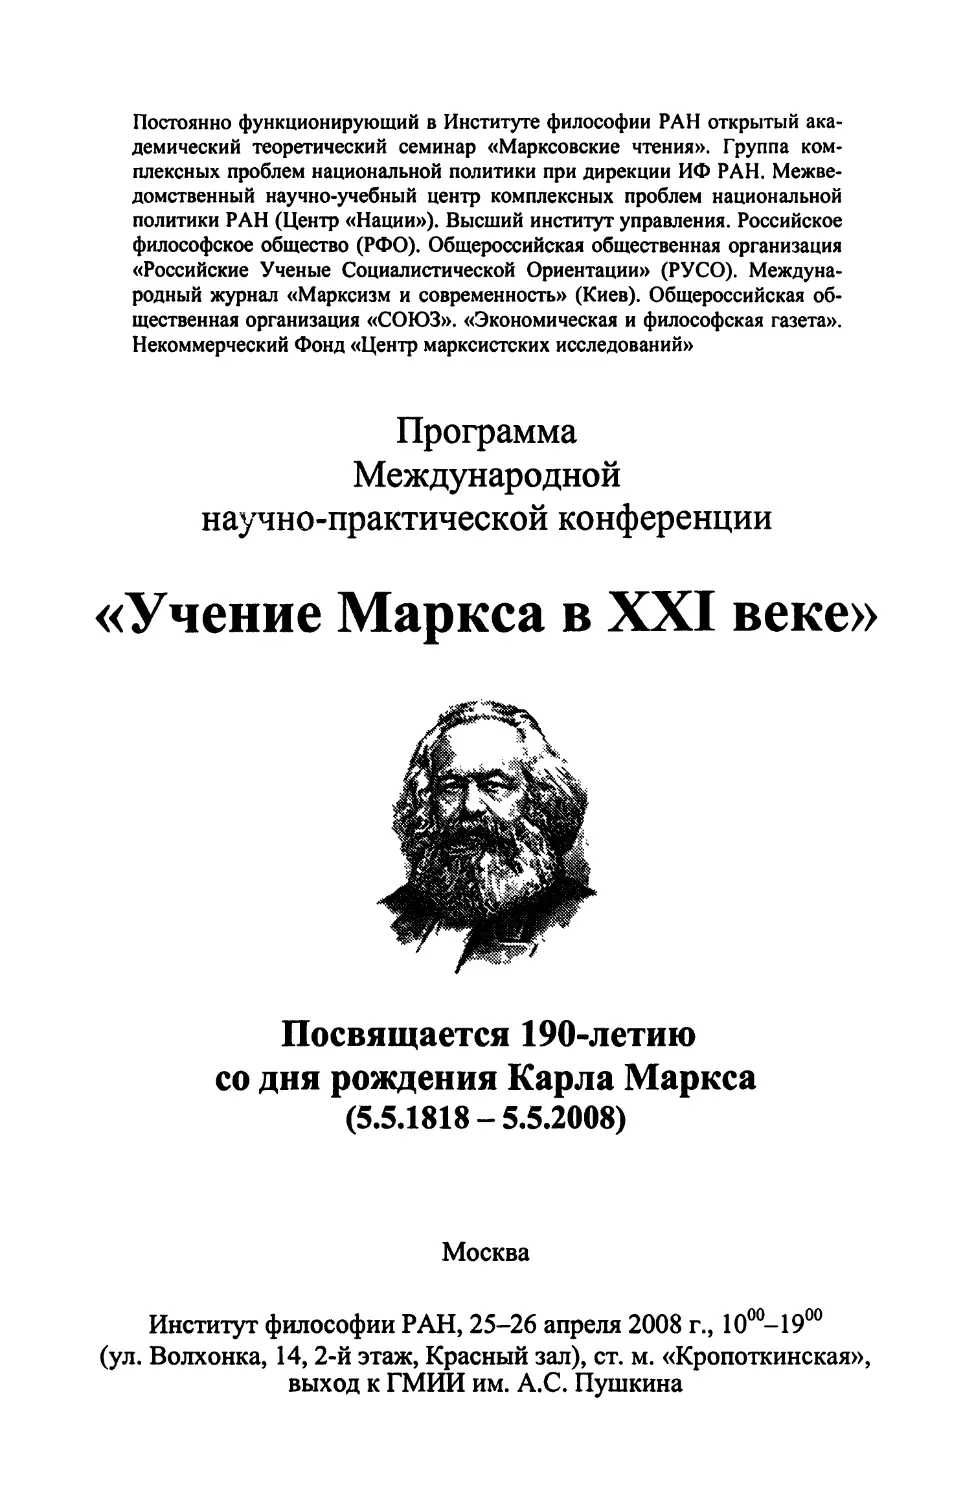 Программа Международной научно-практической конференции «Учение Маркса в XXI веке»